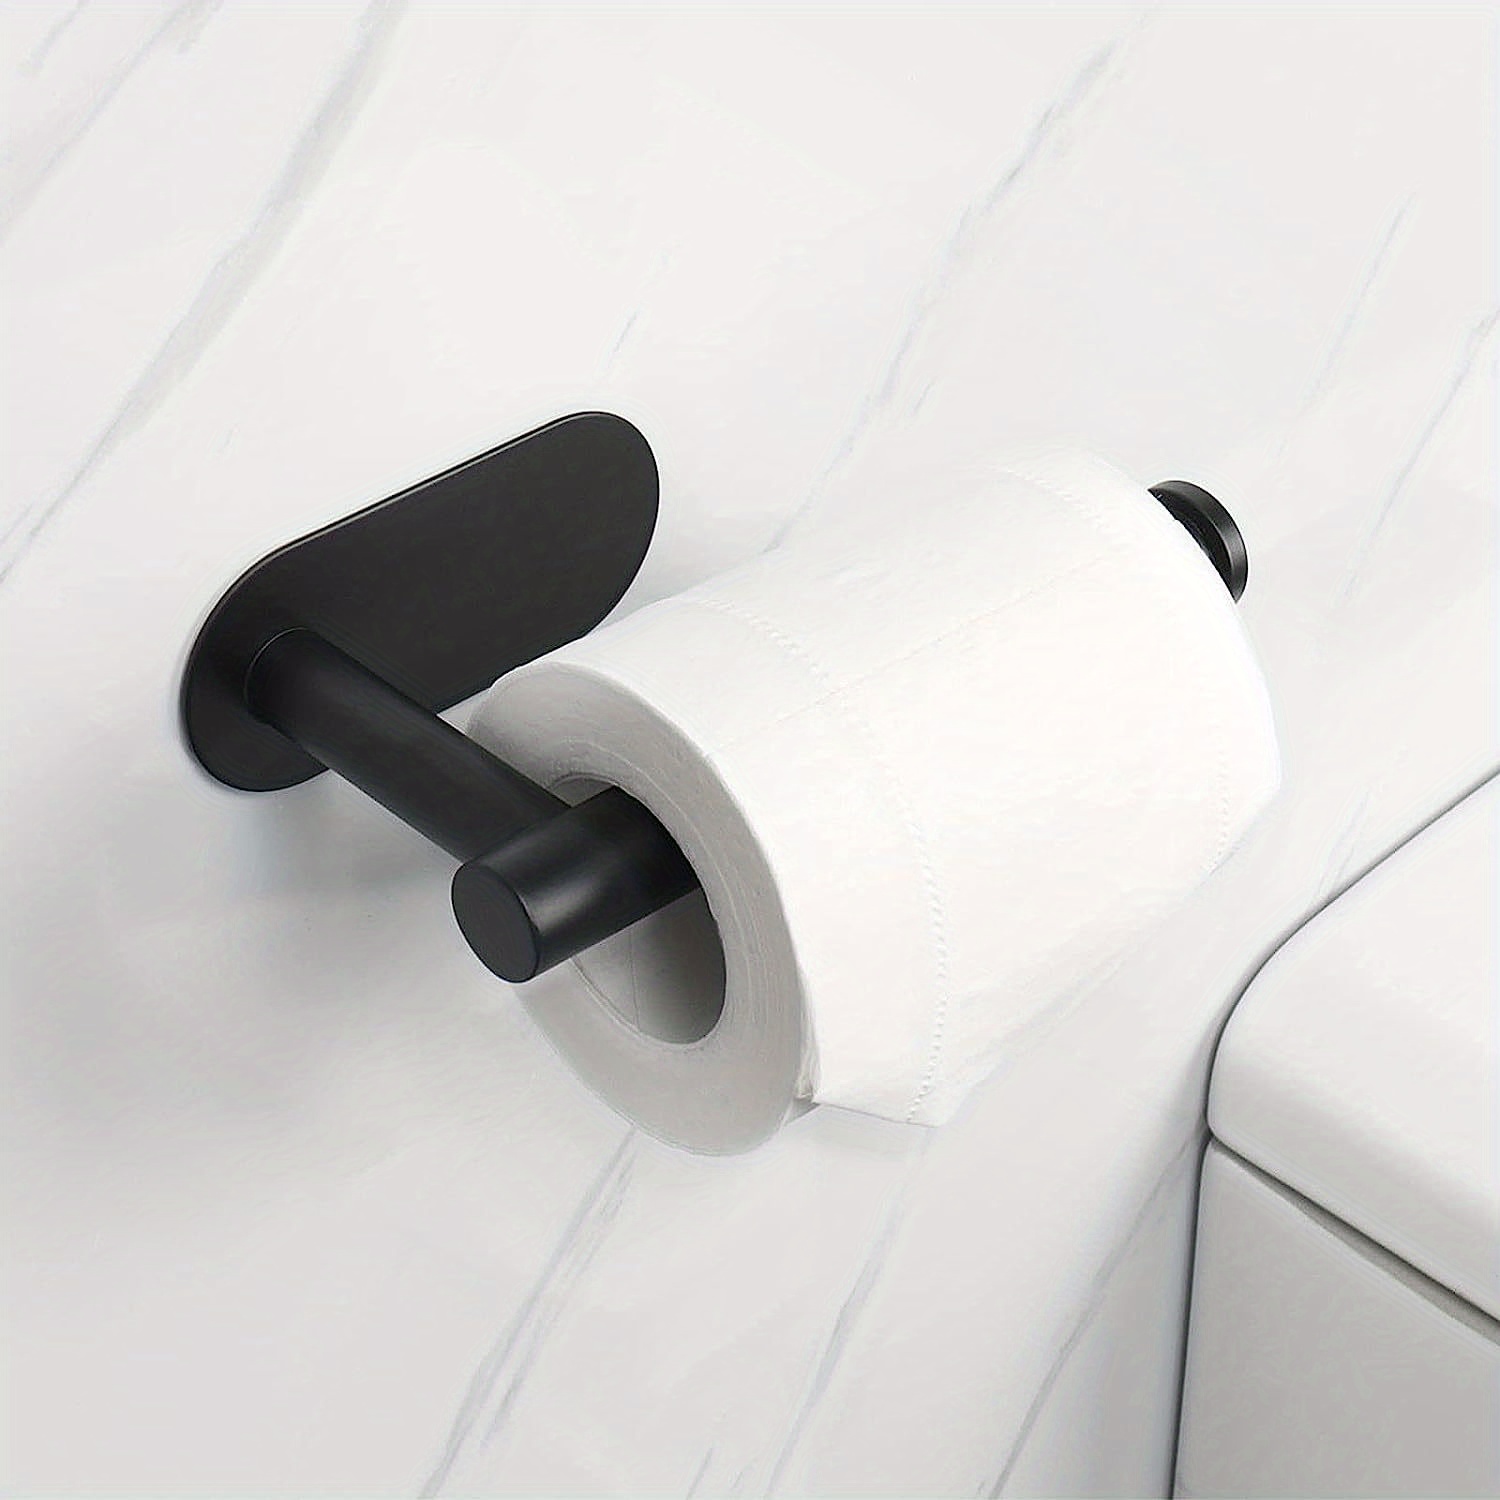 Portarrollos de papel higiénico individual con kit de montaje incluido  fabricado en metal color negro Erlo Tutumi